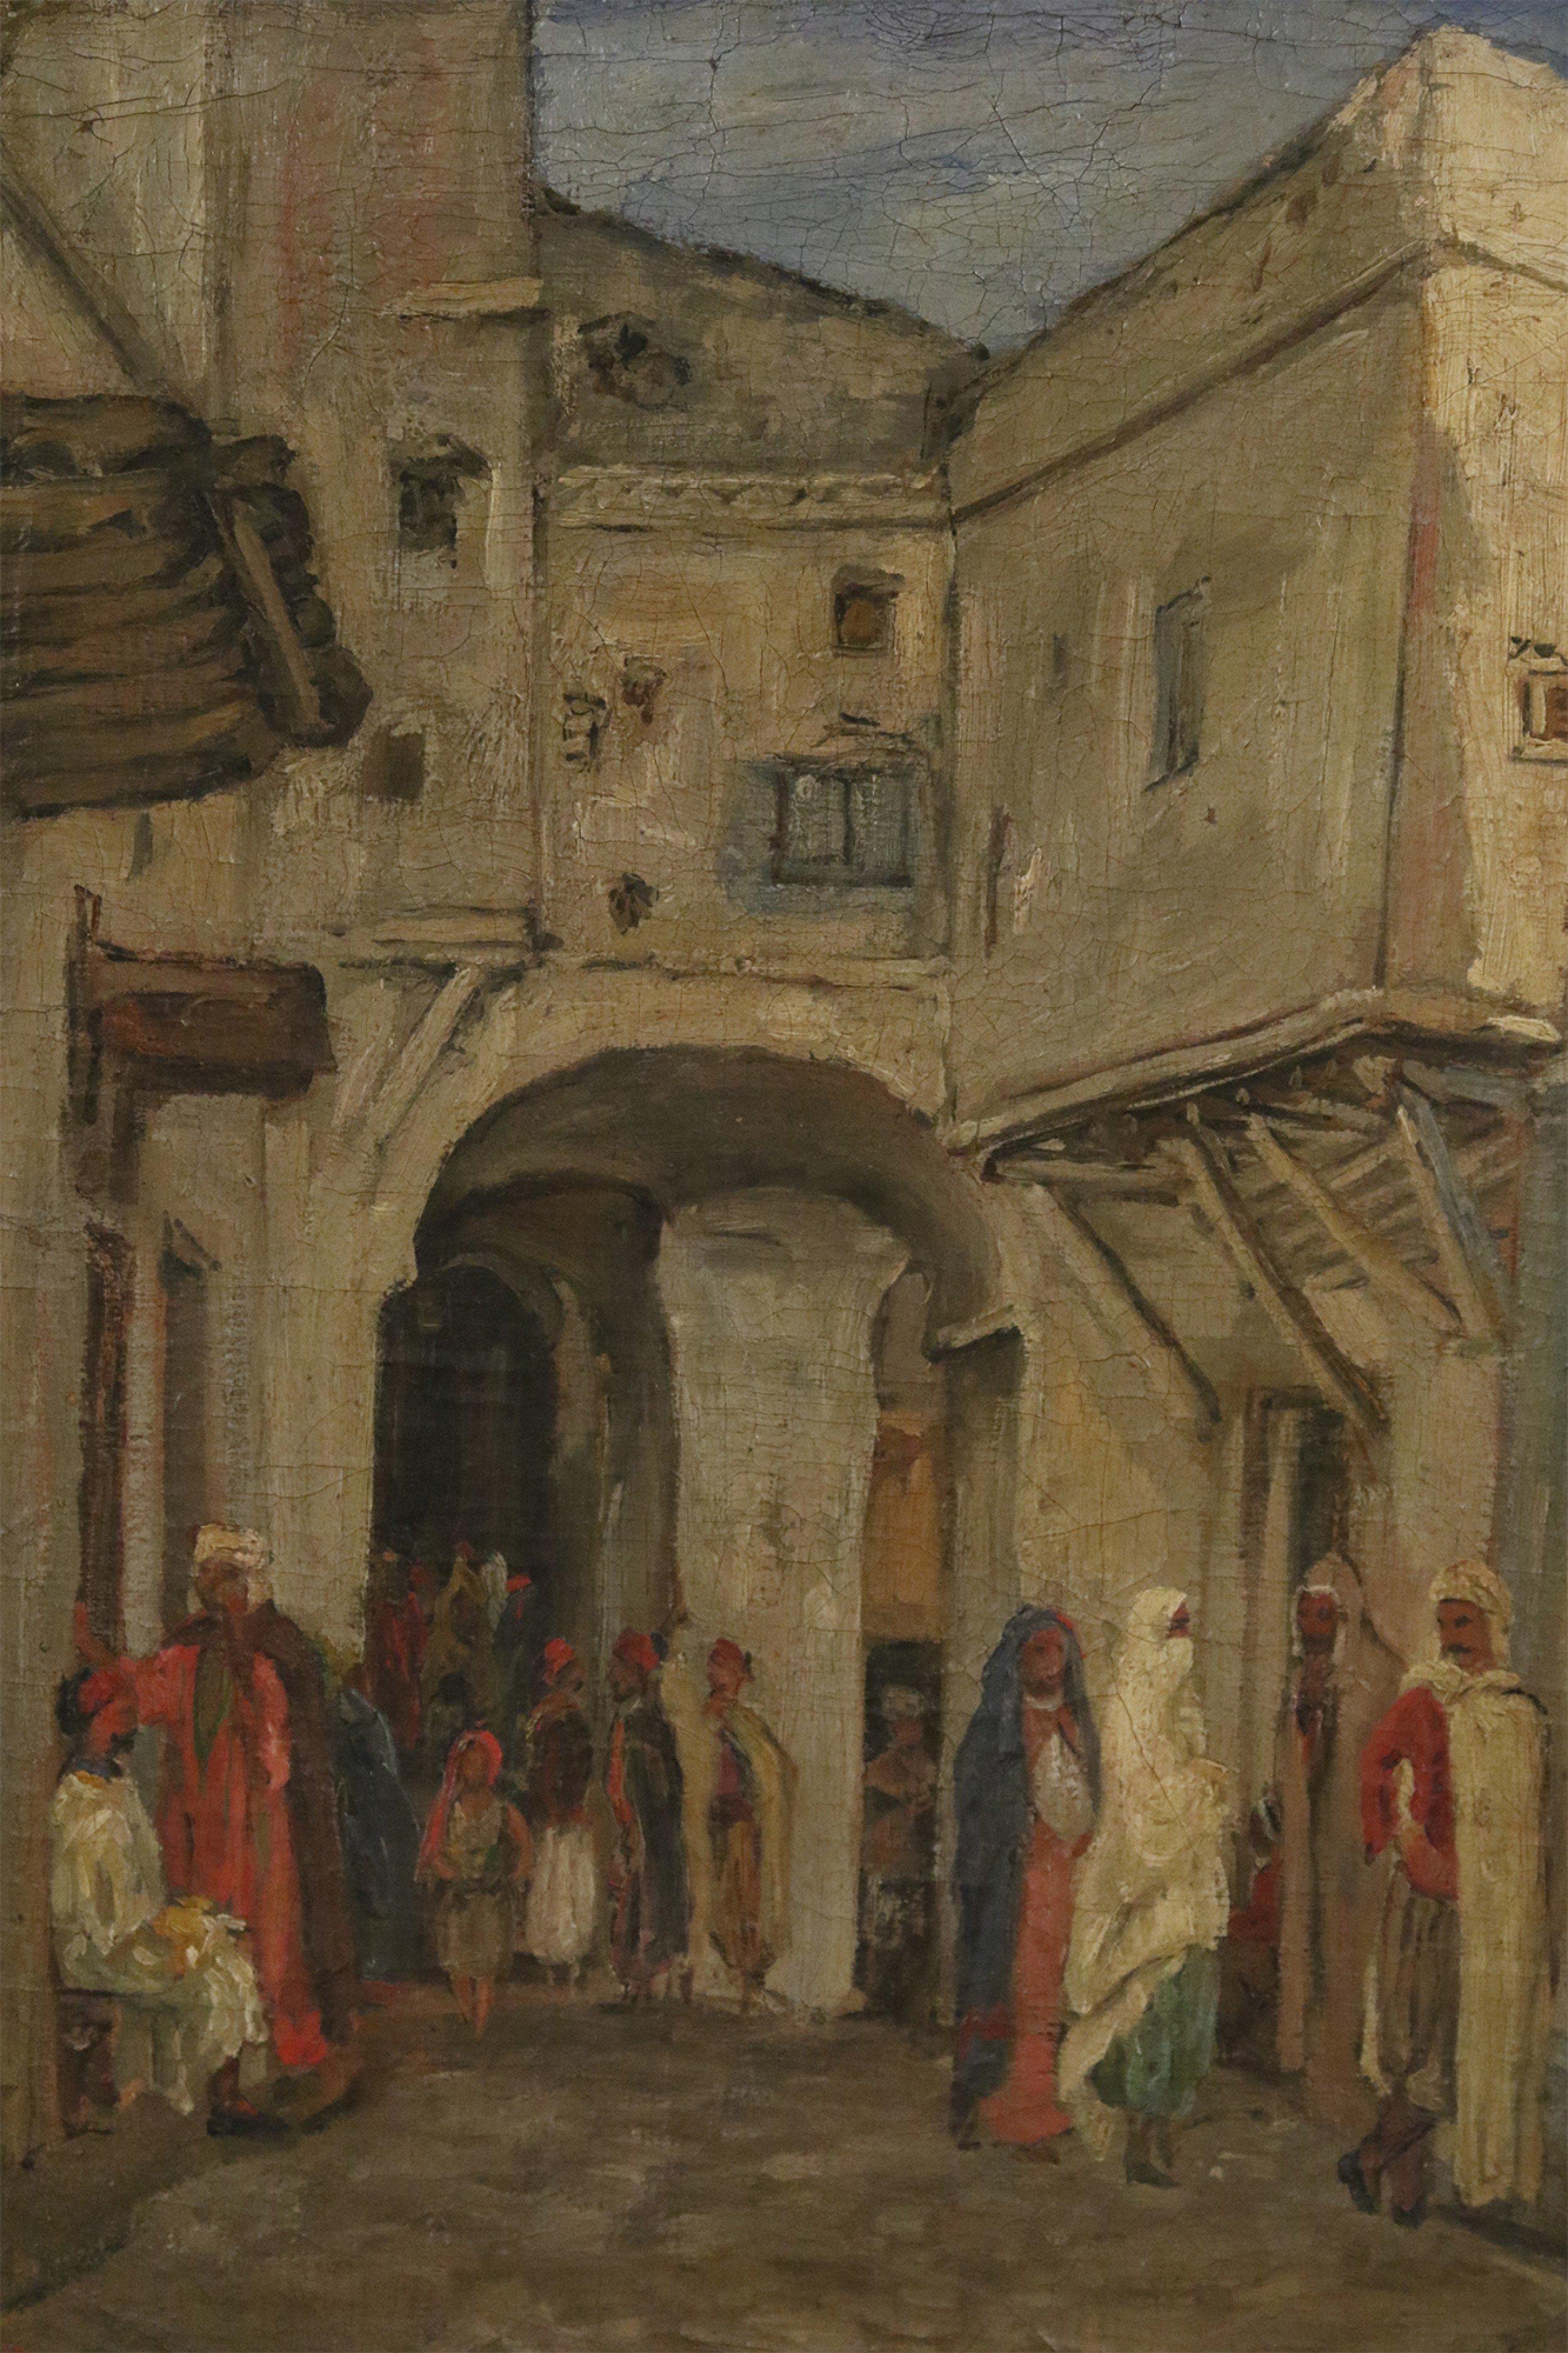 Peinture à l'huile française de l'époque victorienne (19e siècle) représentant une scène de rue du Moyen-Orient dans un cadre orné en bois doré sculpté (signé).